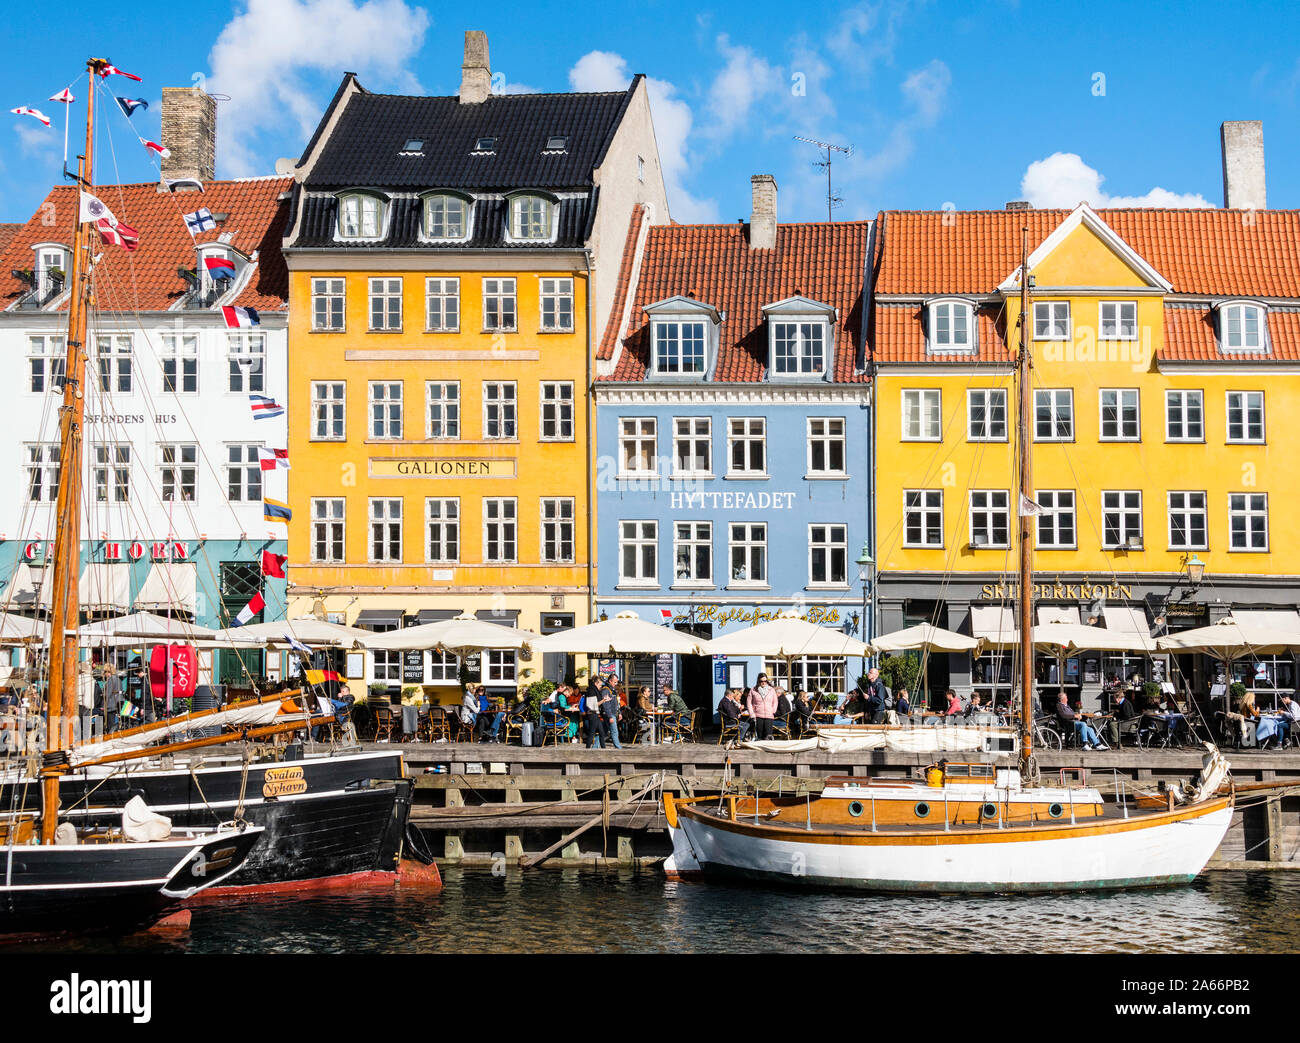 Nyhavn - a bord de l'eau, canal et de divertissement à Copenhague, Danemark Banque D'Images